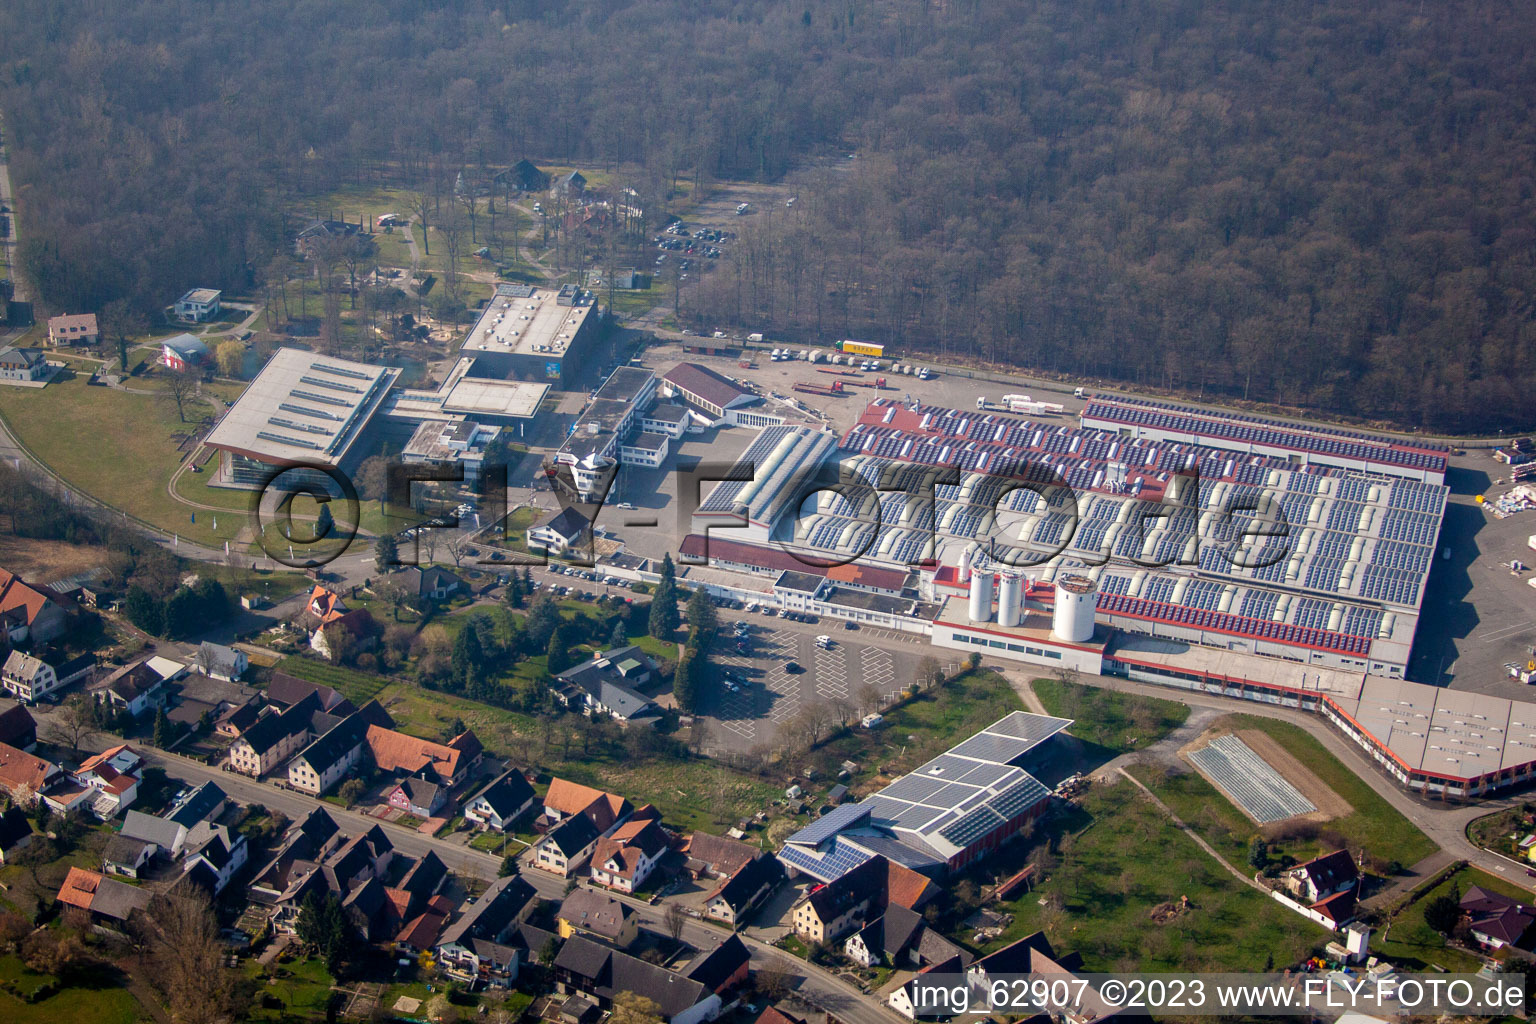 Quartier Linx in Rheinau dans le département Bade-Wurtemberg, Allemagne vue d'en haut